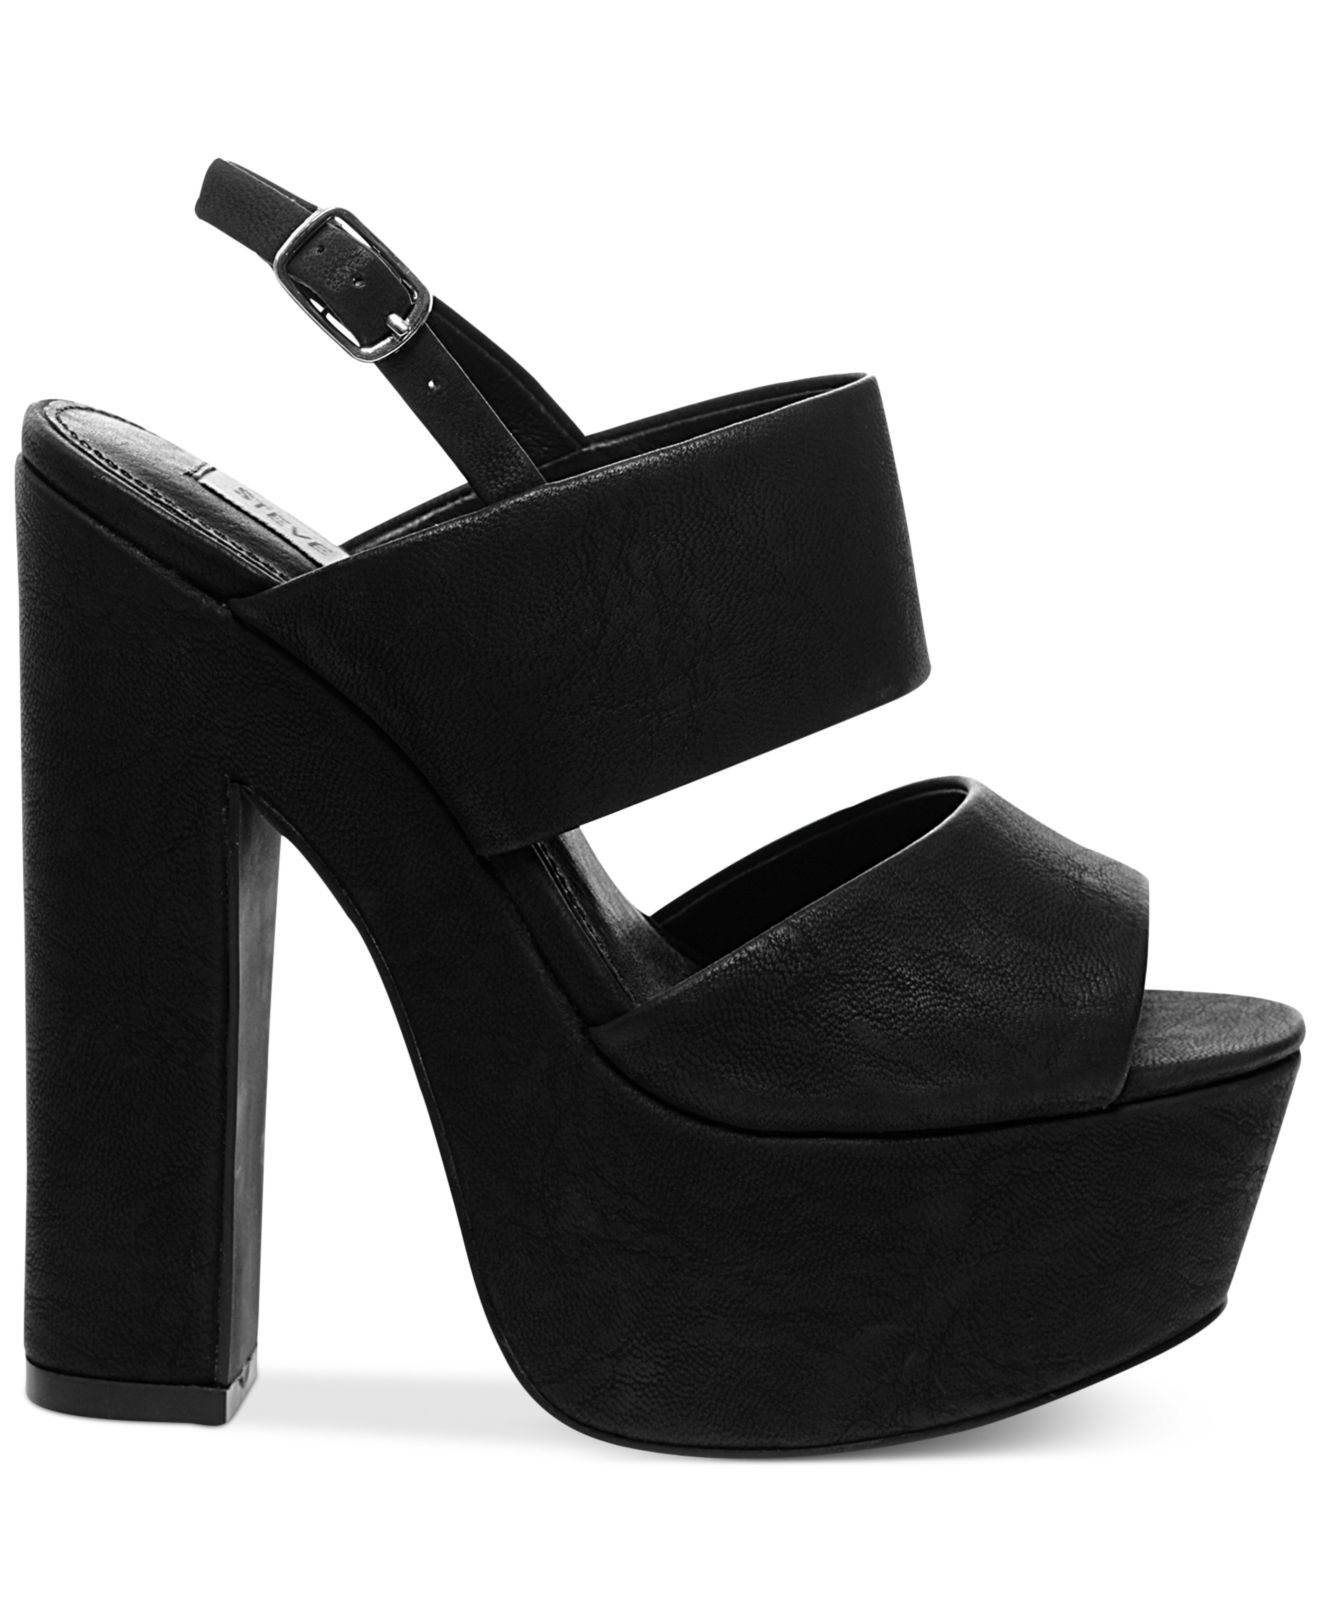 Lyst - Steve Madden Women's Wellthy Slingback Platform Sandals in Black